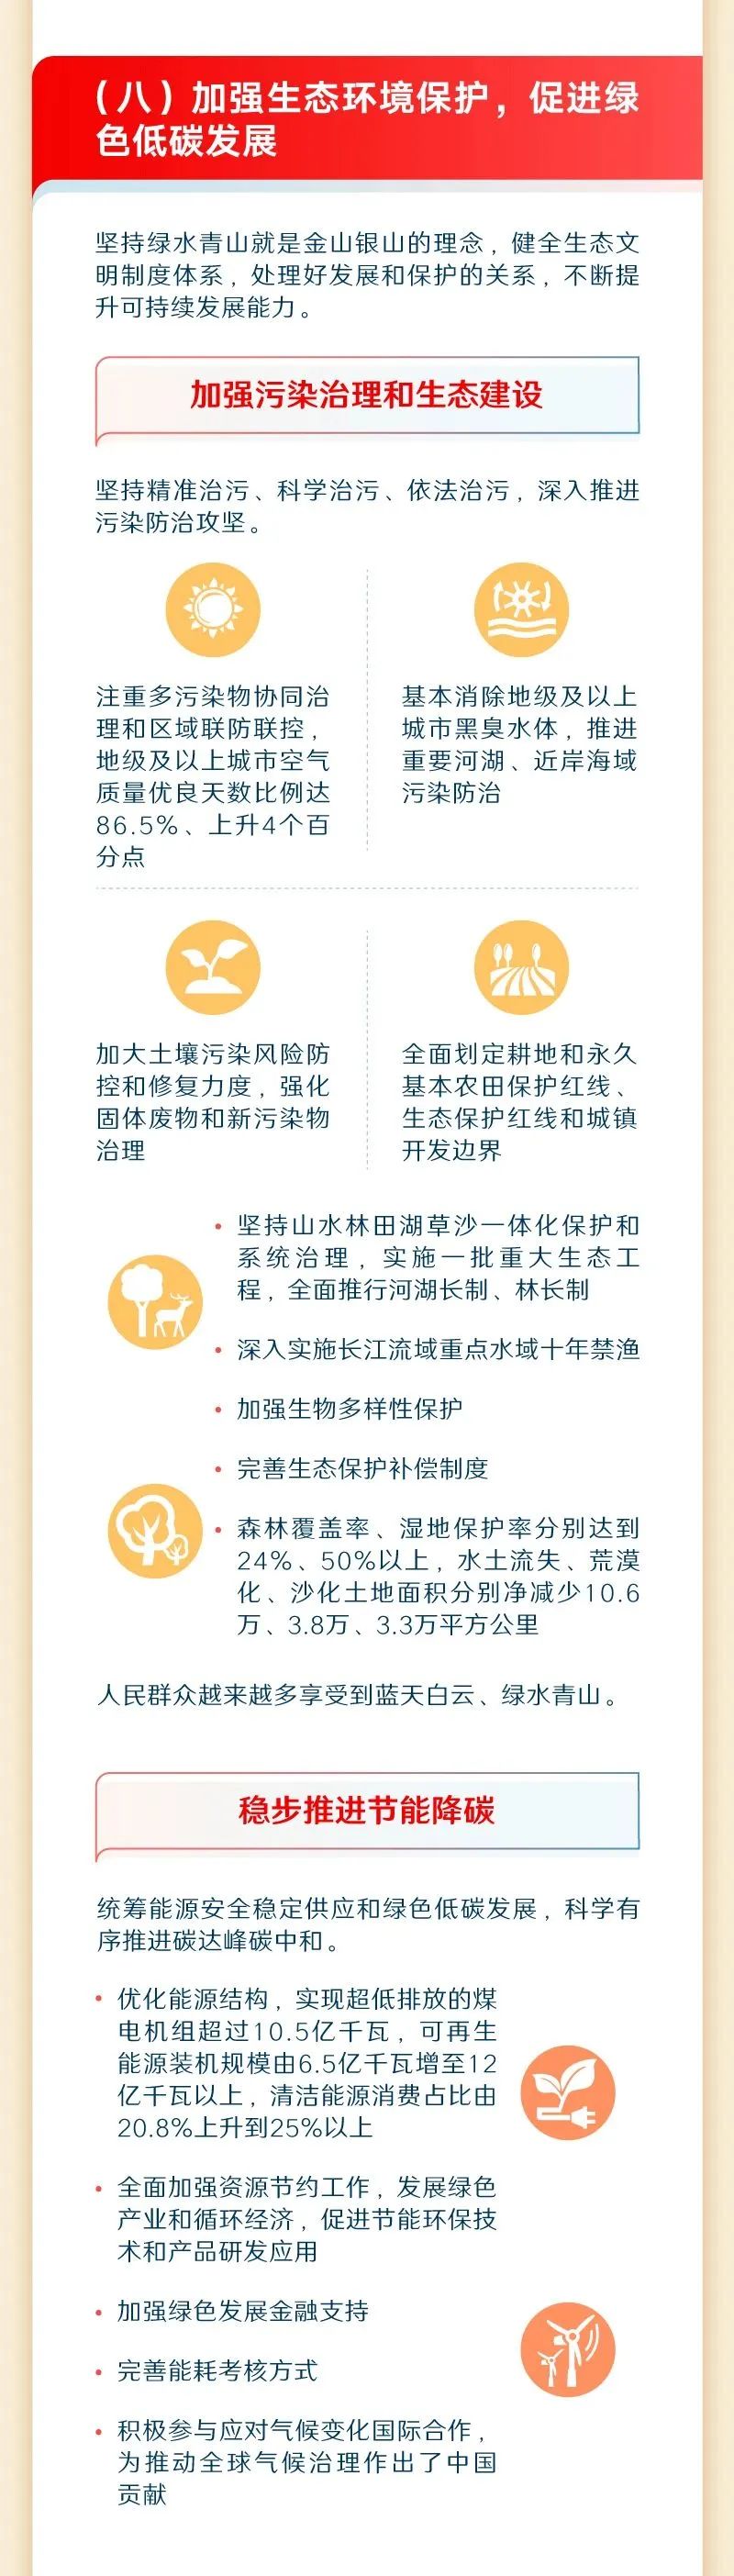 政策解读 (11).jpg